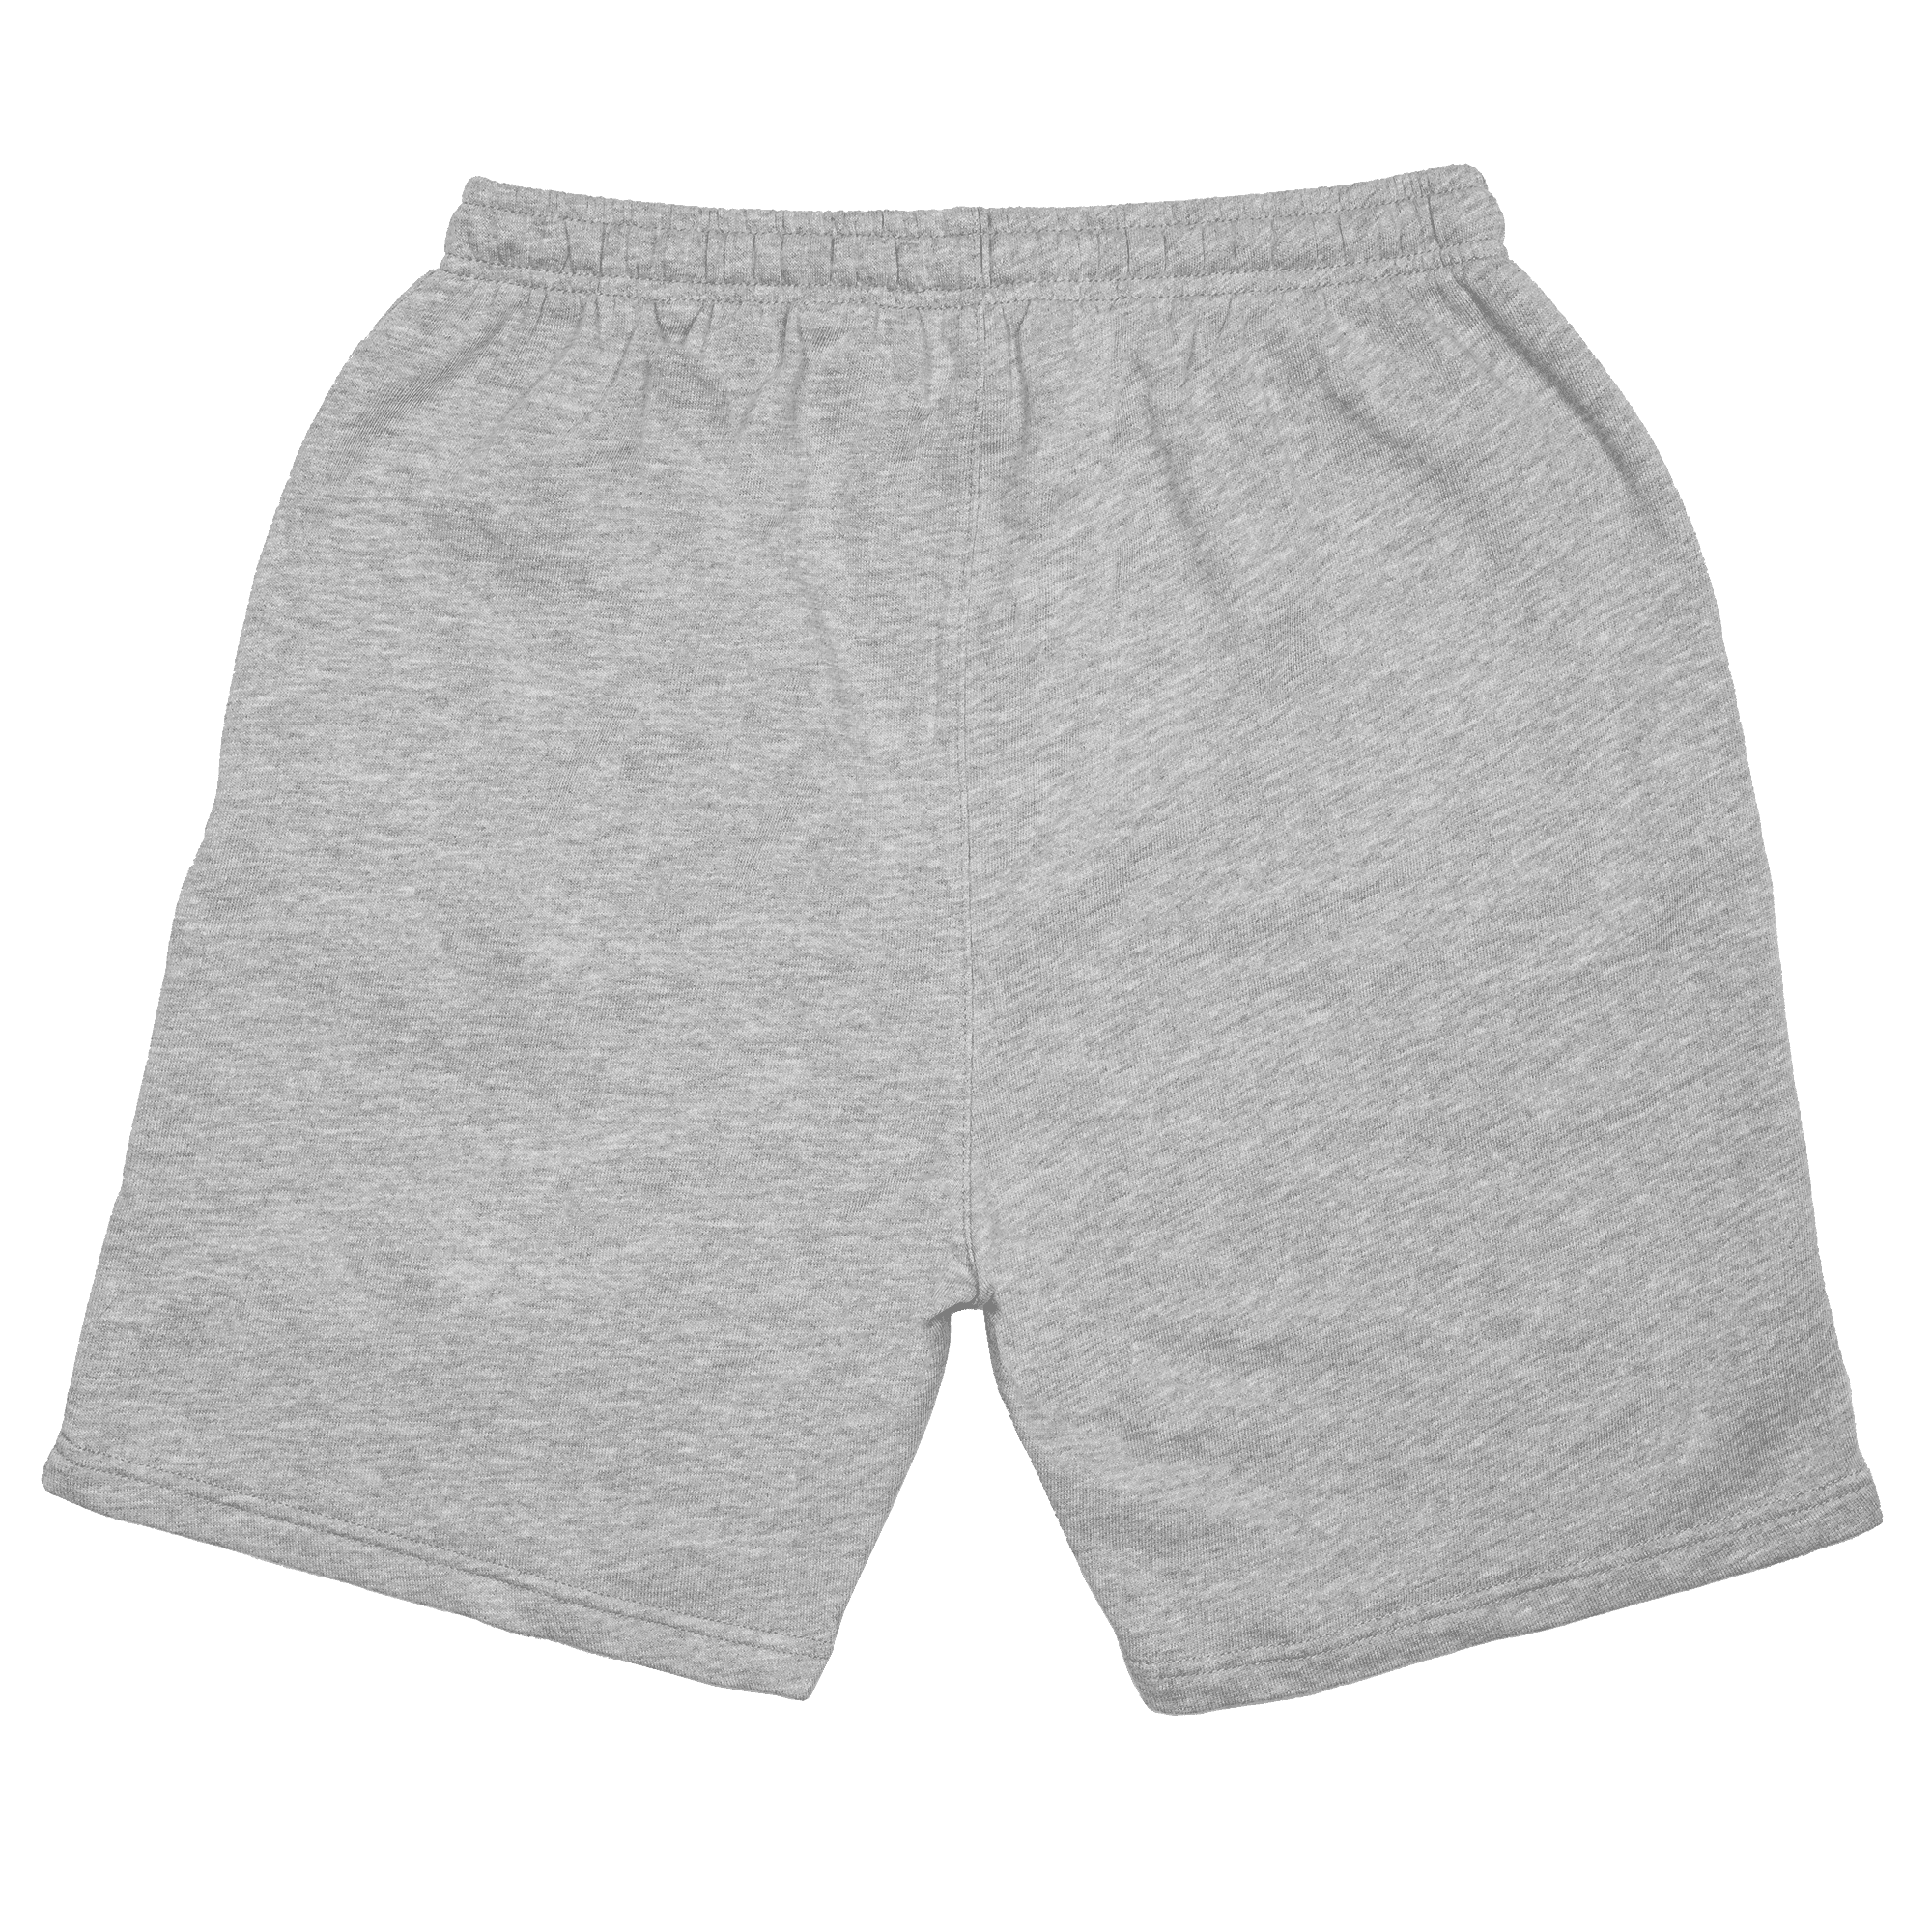 BU1 walking shorts gray